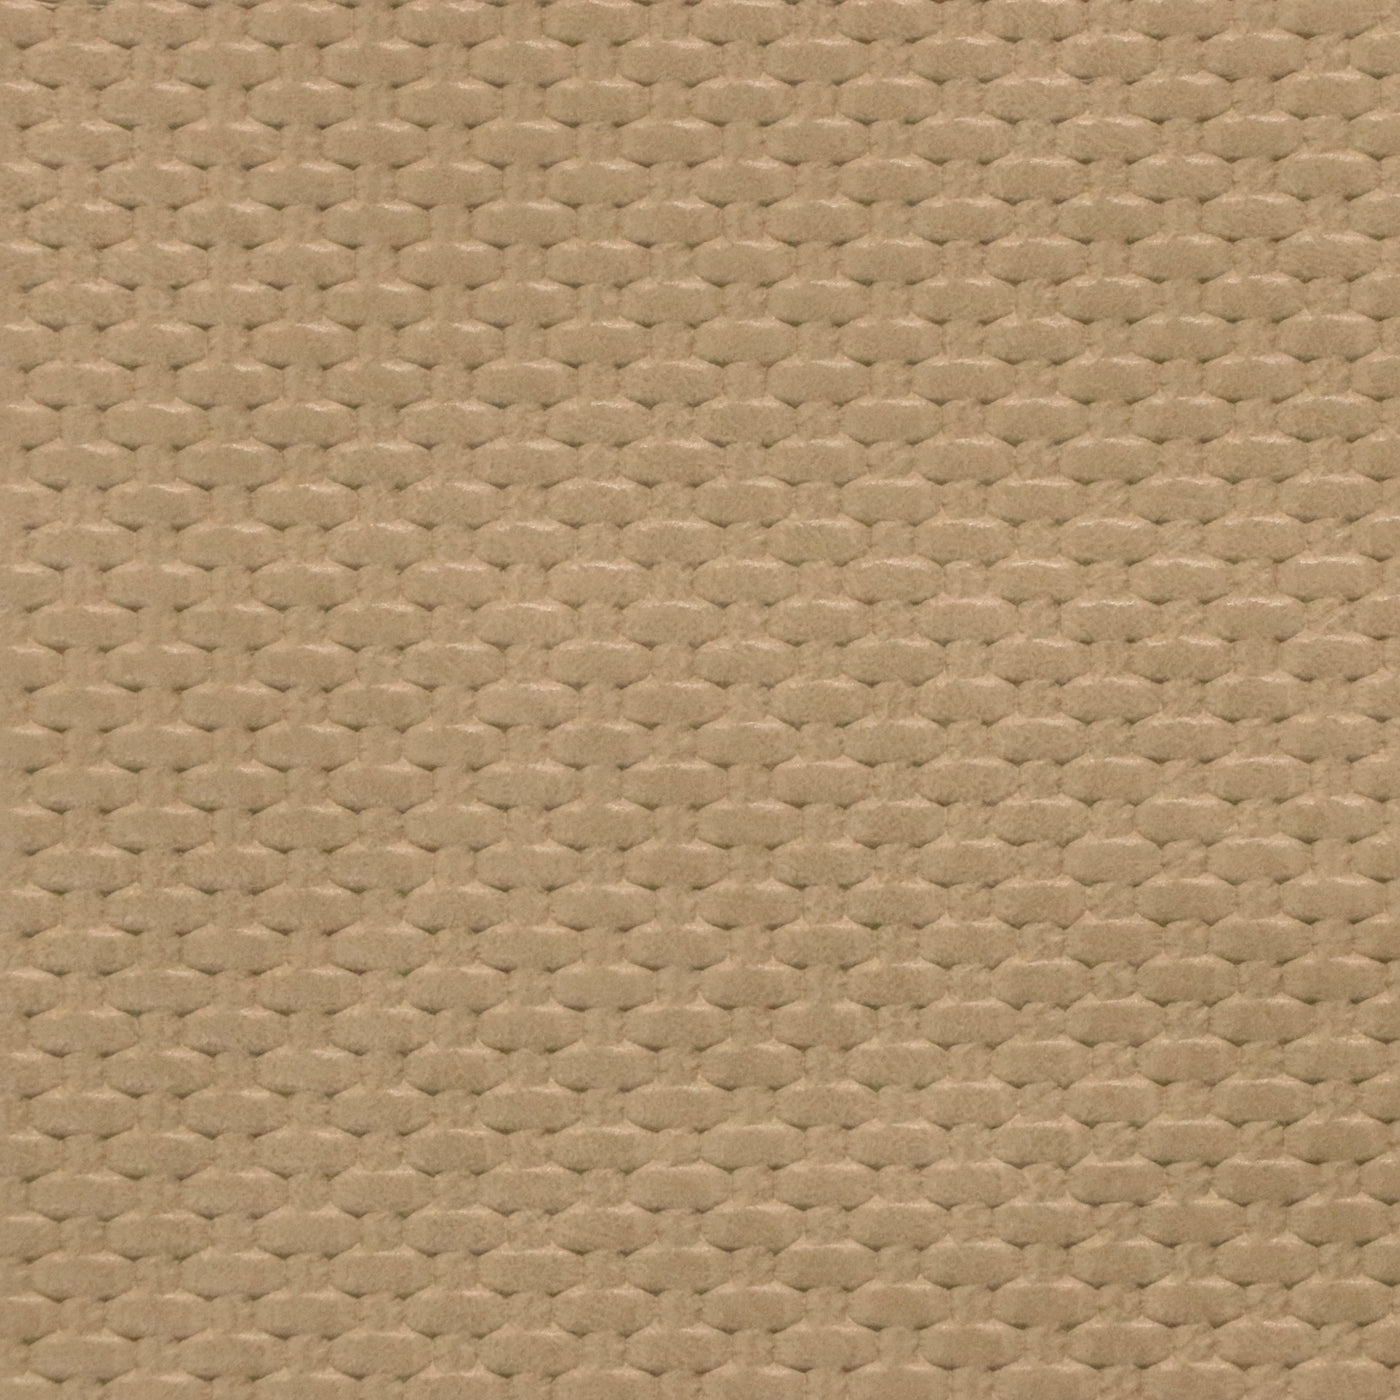 Corte empaquetado de 1/2 yarda: cuero sintético tejido beige